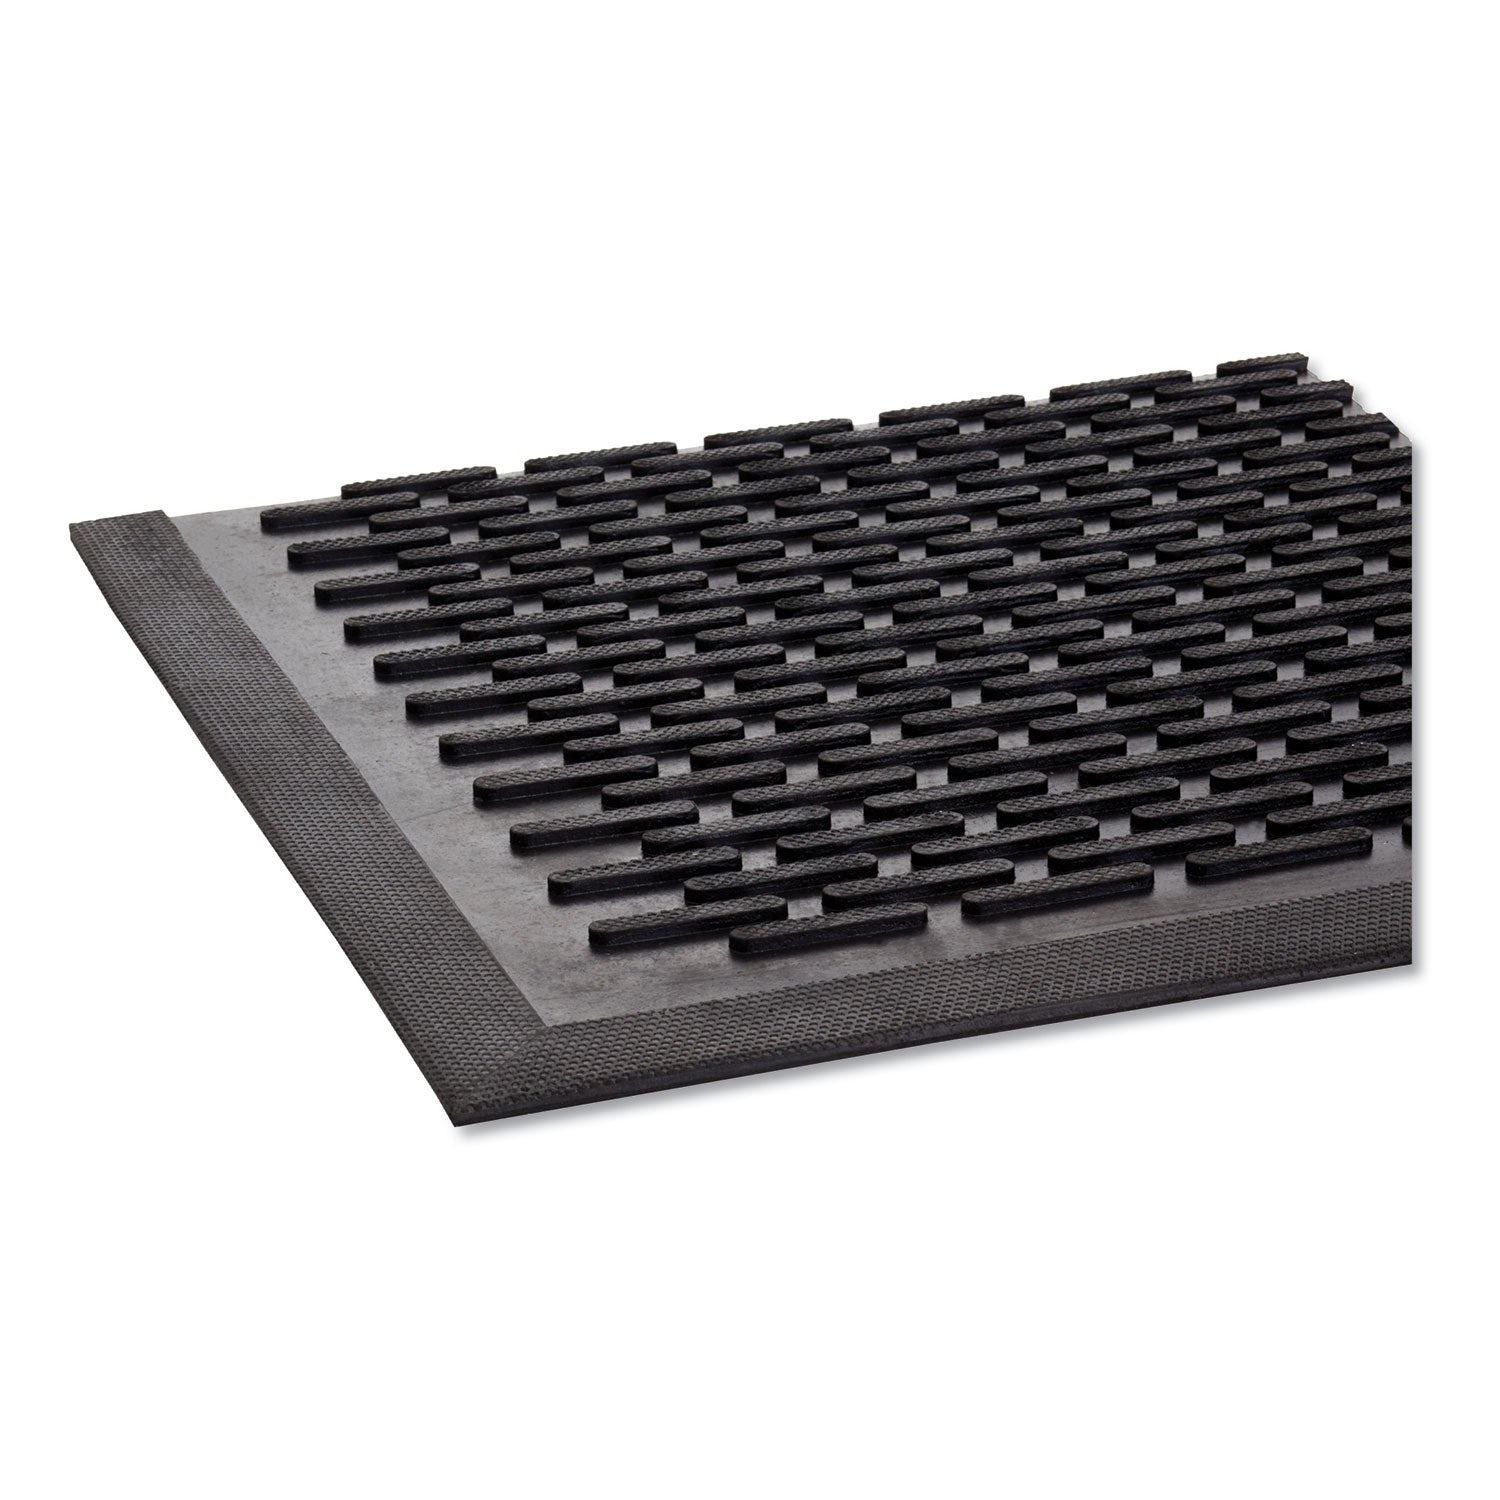 Crown-Tred Indoor/Outdoor Scraper Mat, Rubber, 35.5 x 59.5, Black - 